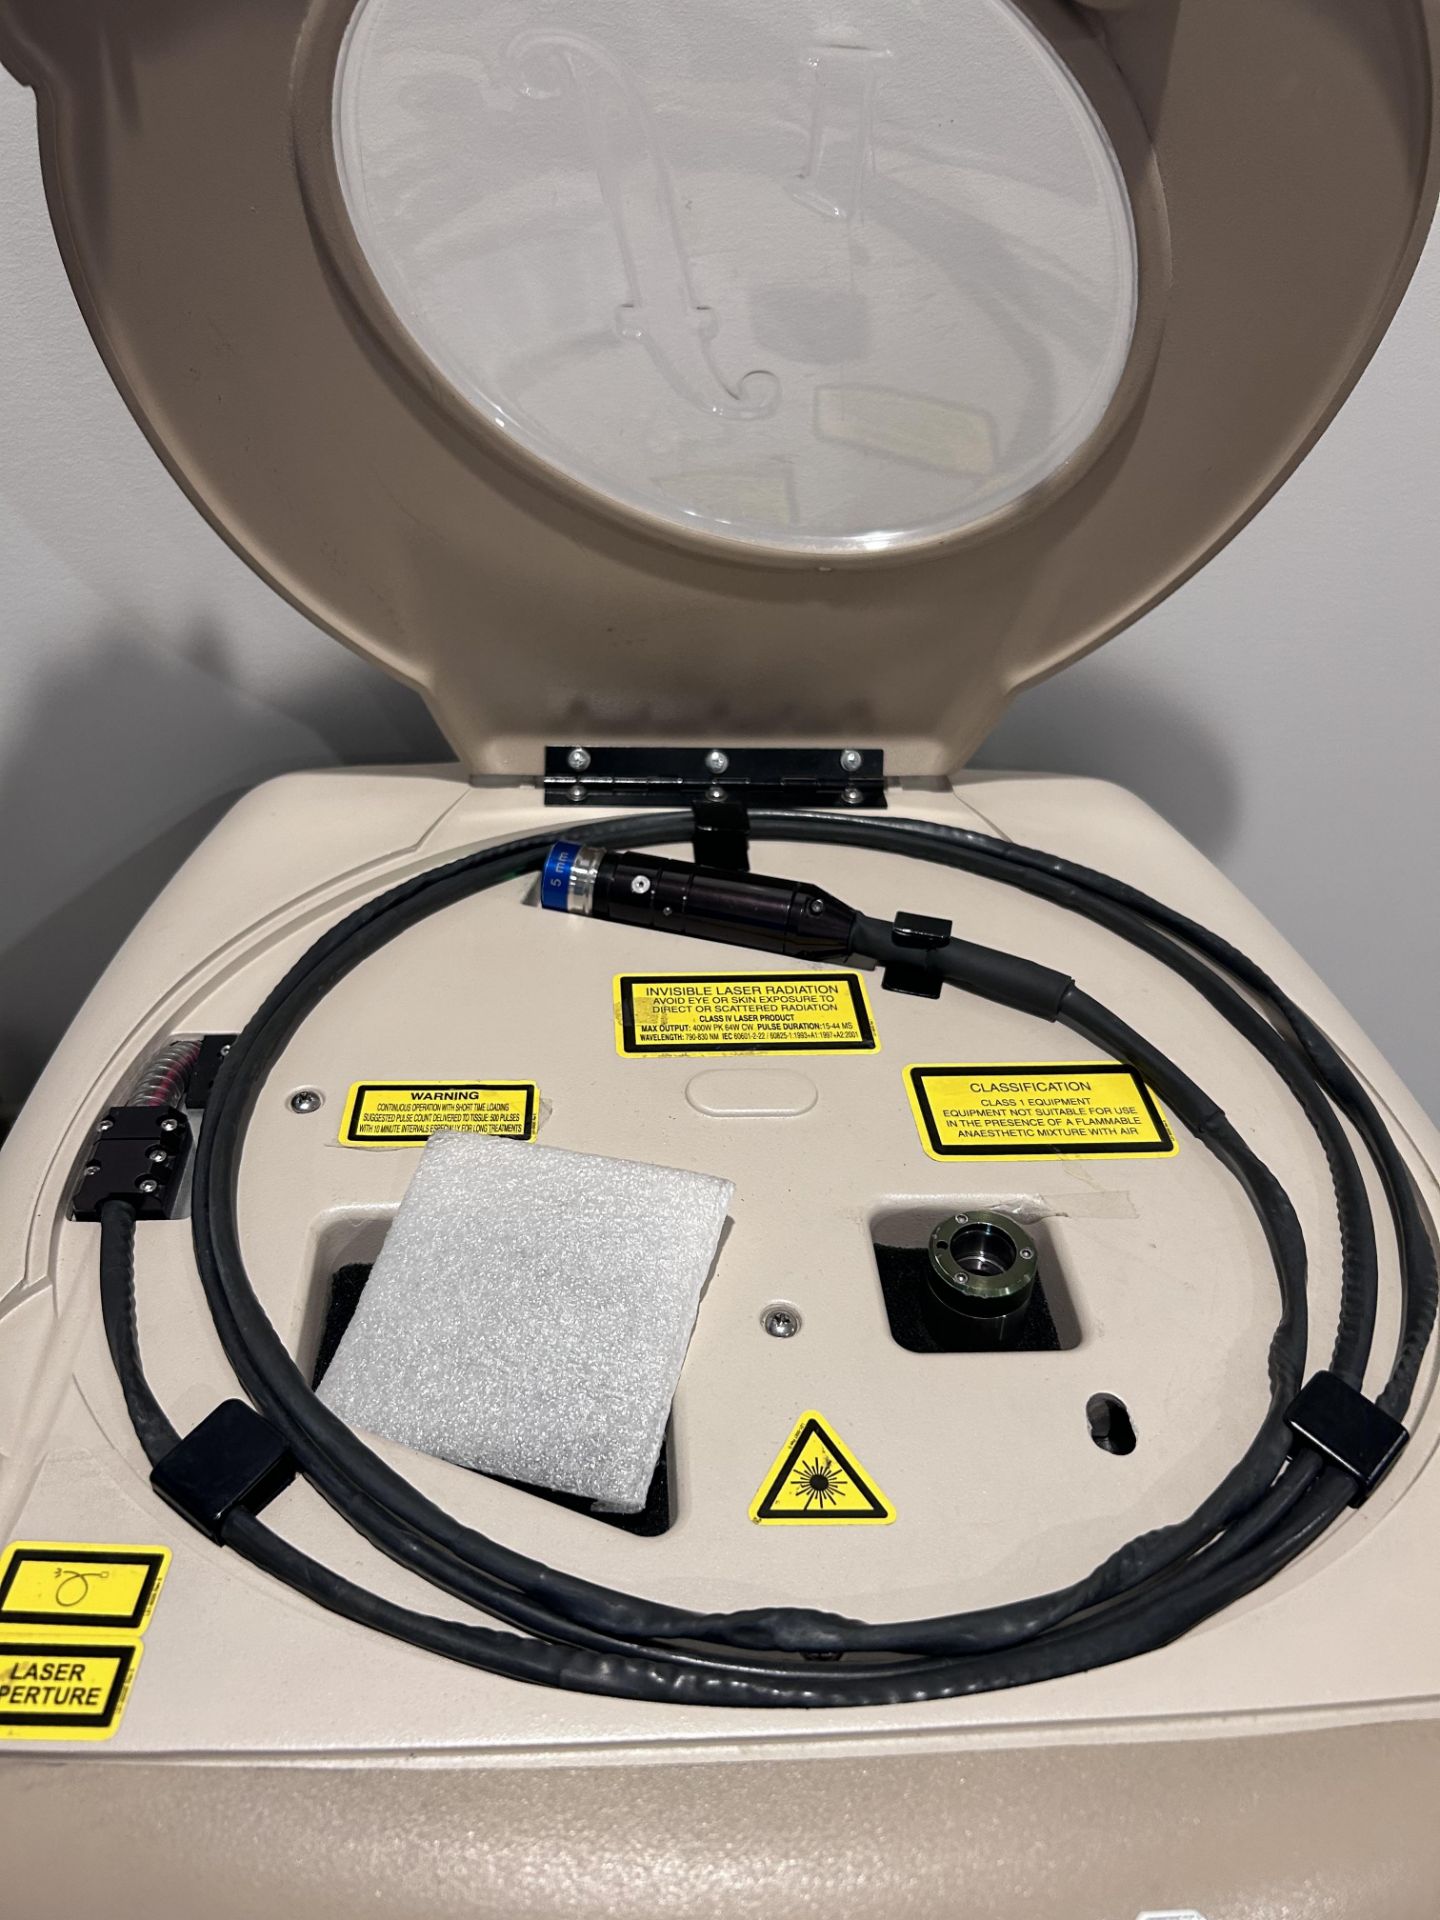 OPUS-MED mod. F1 Laser Diode Machine for epilation - Image 2 of 5